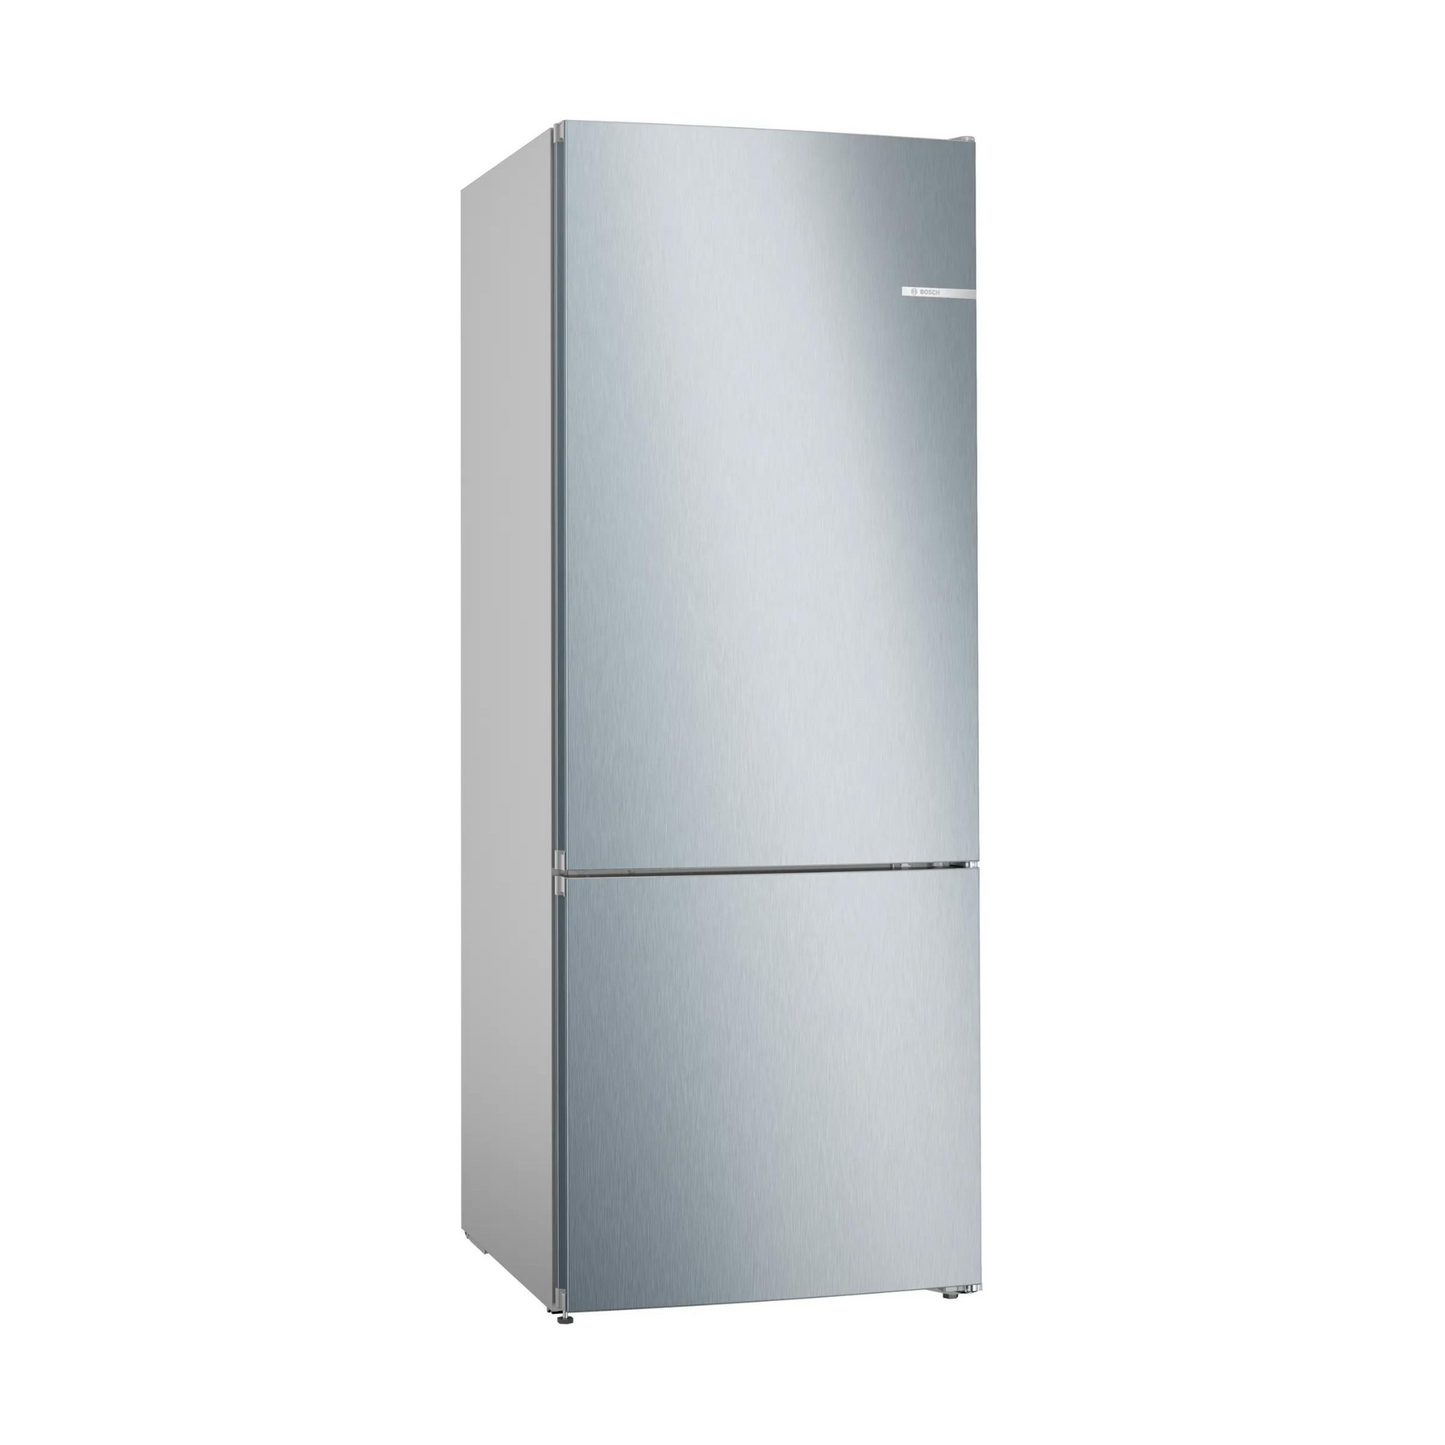 Bosch 530L Double Door Refrigerator, KGN55VL20M